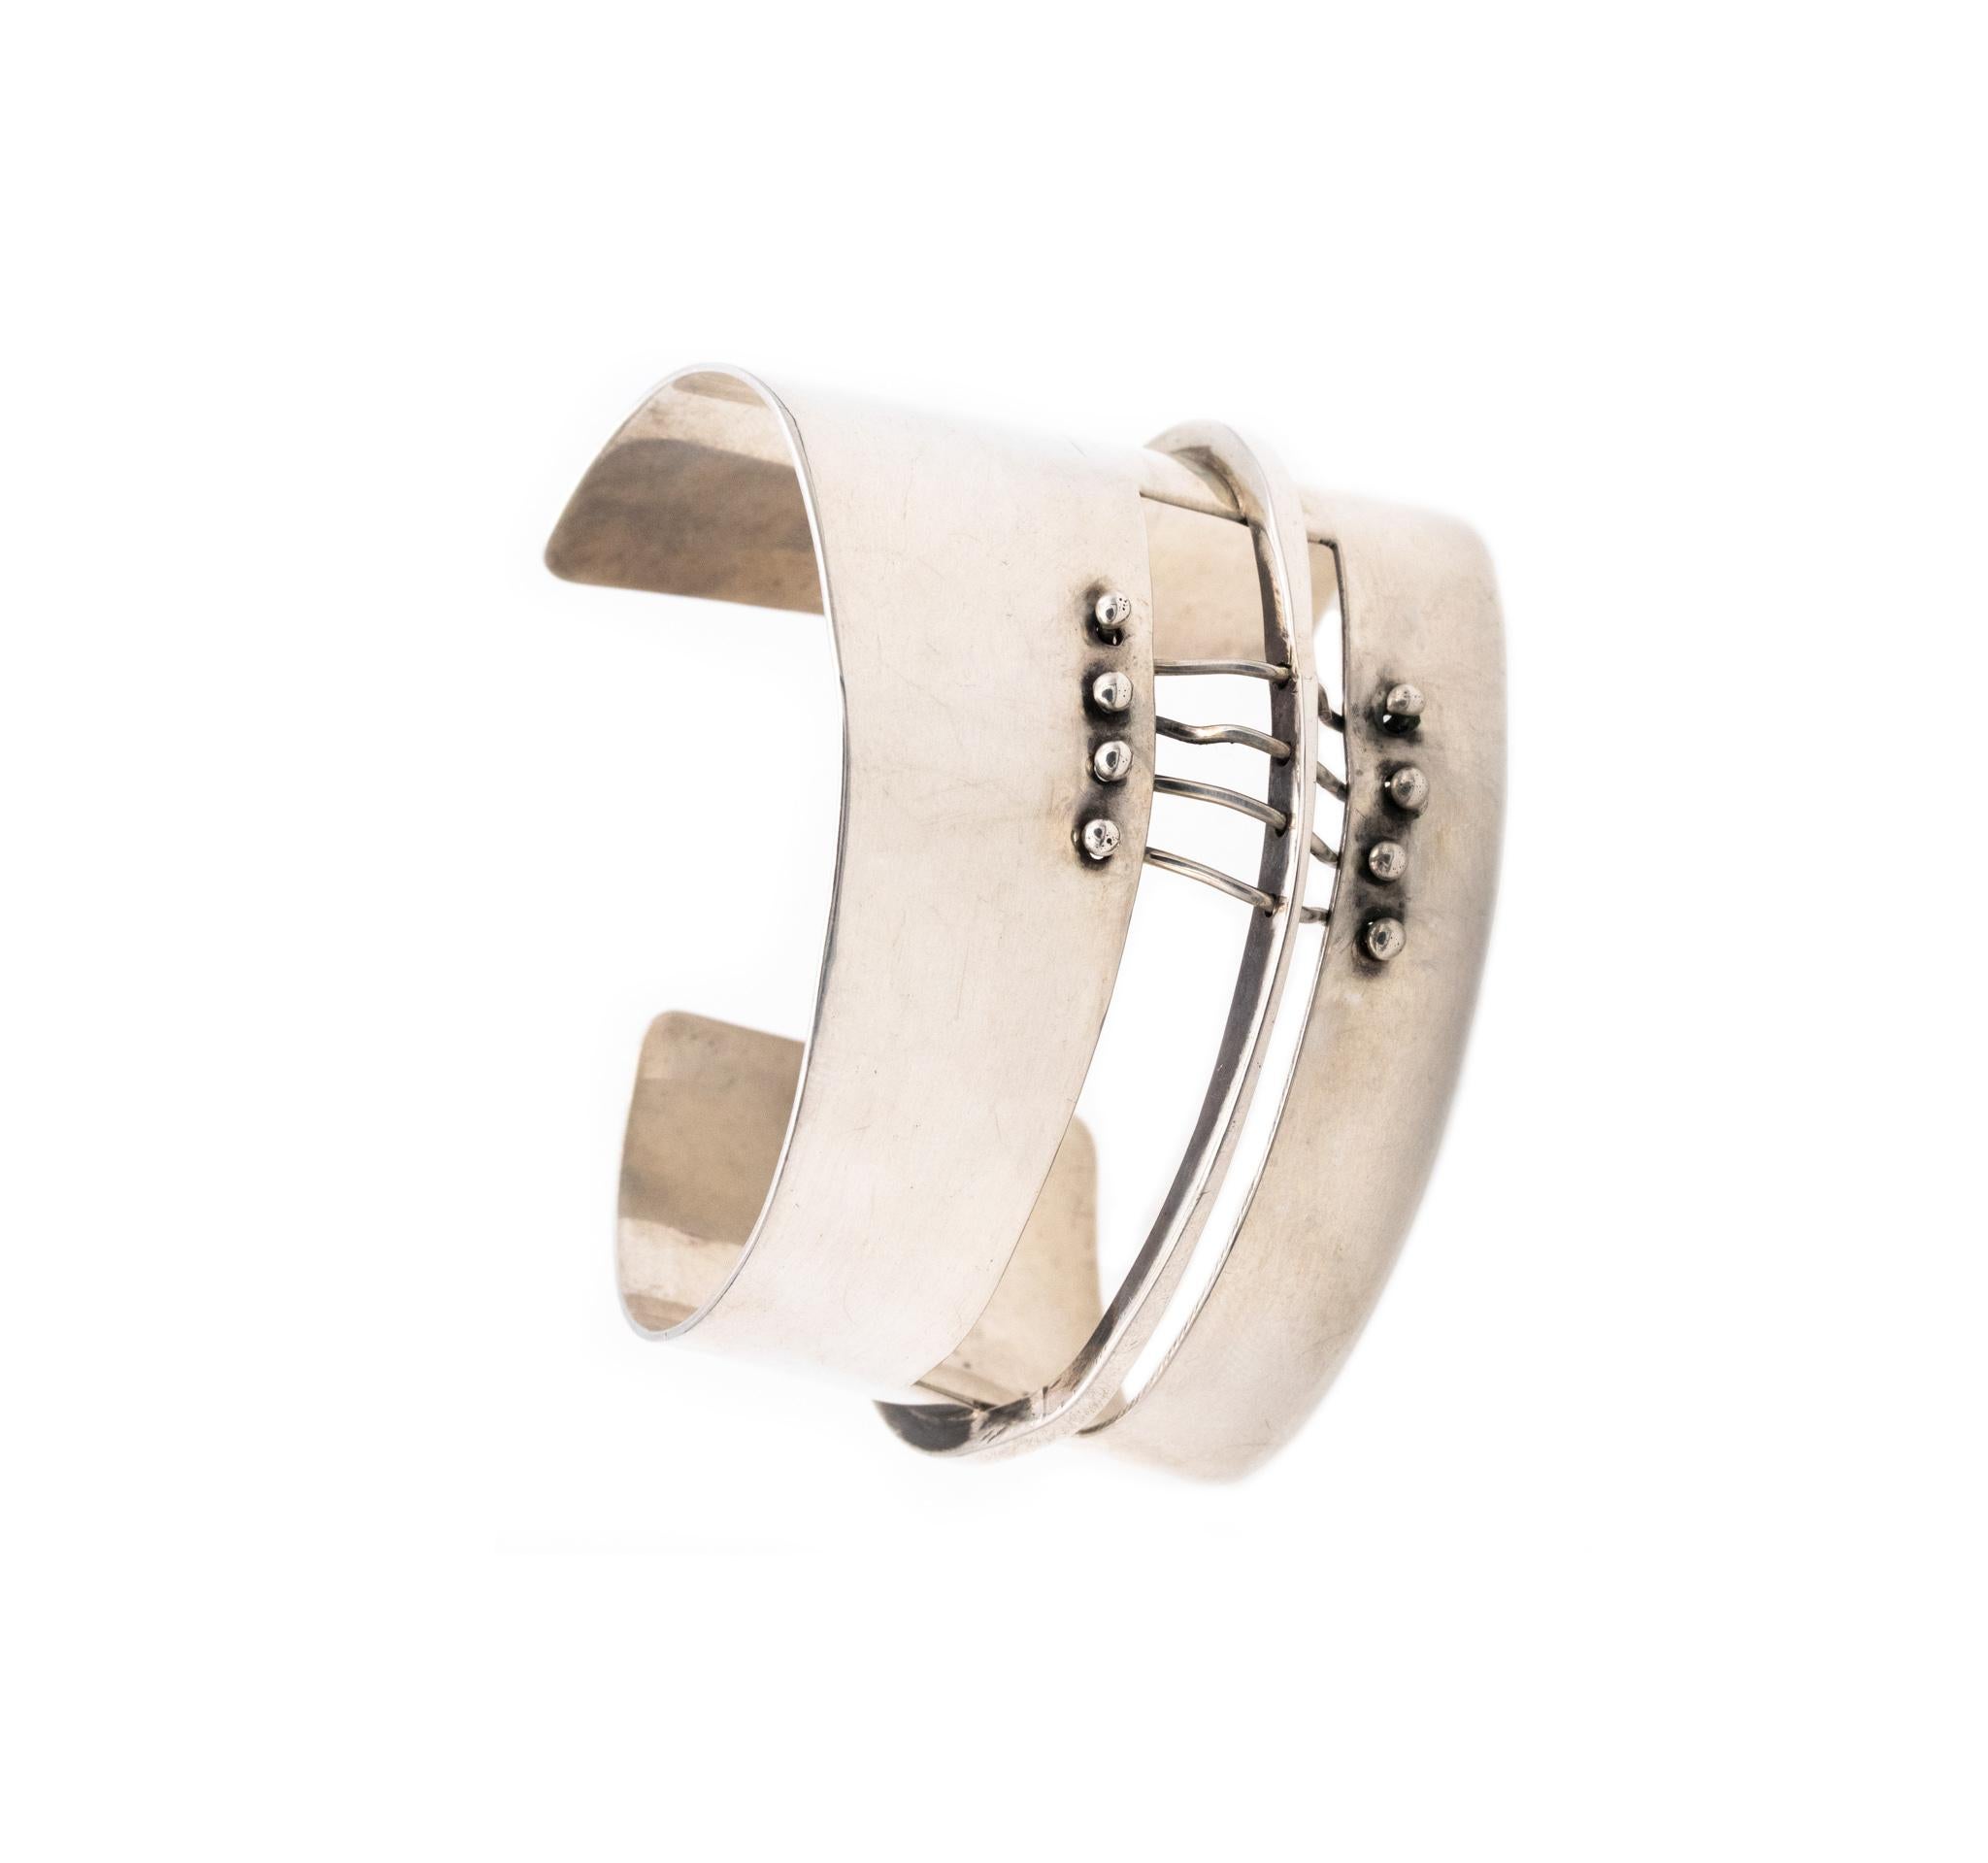 Ein von Ed Wiener (1918-1991) entworfenes Manschettenarmband.

Dieses seltene skulpturale Stück der Moderne ist eine von Wieners ersten Kreationen als Juwelier-Künstler in New York City, circa 1950. Dieses Armband besteht aus sechs Elementen mit